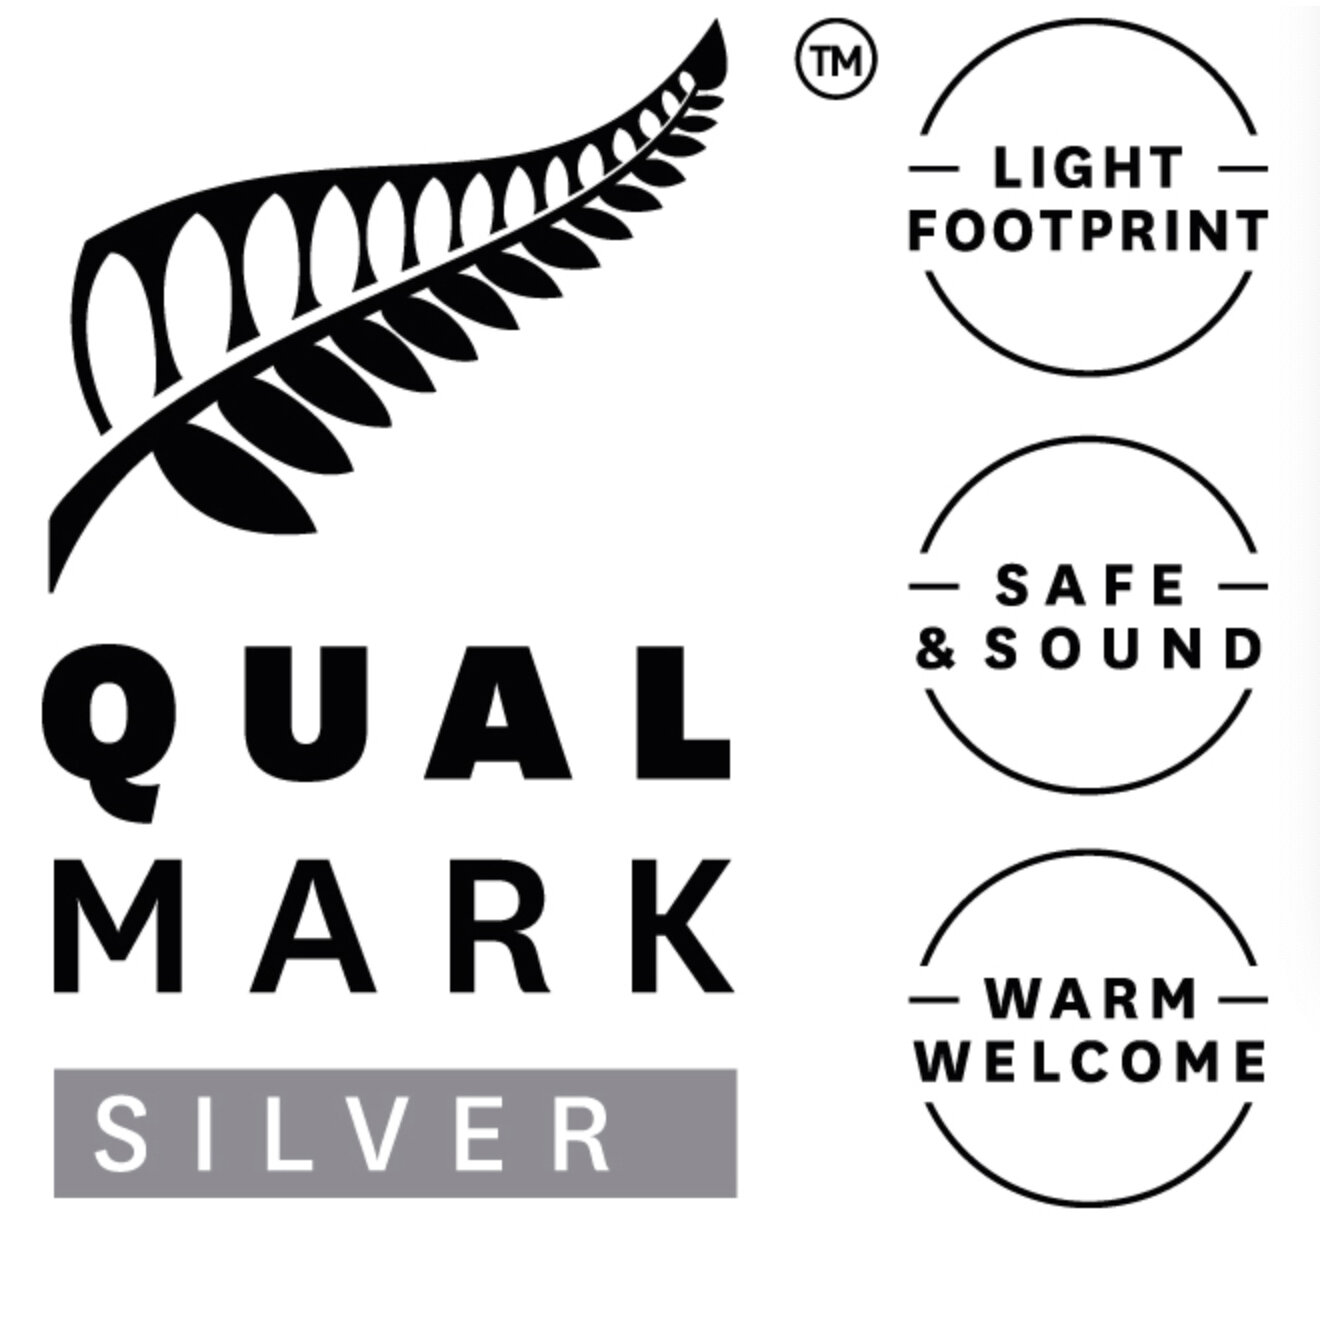 Qualmark Silver Award 2020